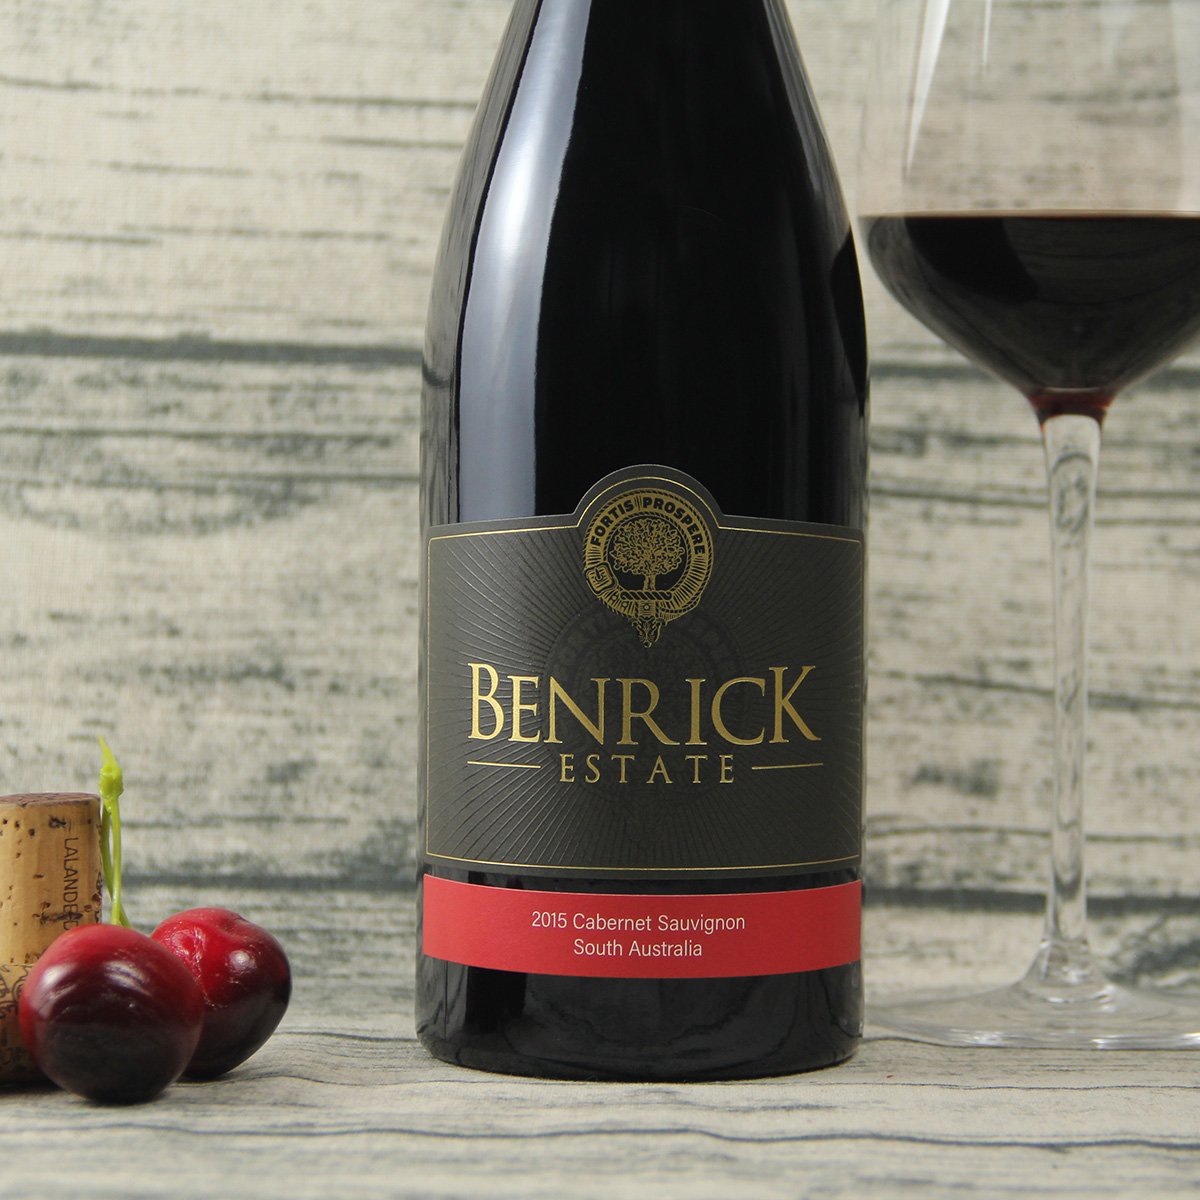 澳大利亚南澳奔瑞庄园·家族荣耀BENRICK赤霞珠干红葡萄酒